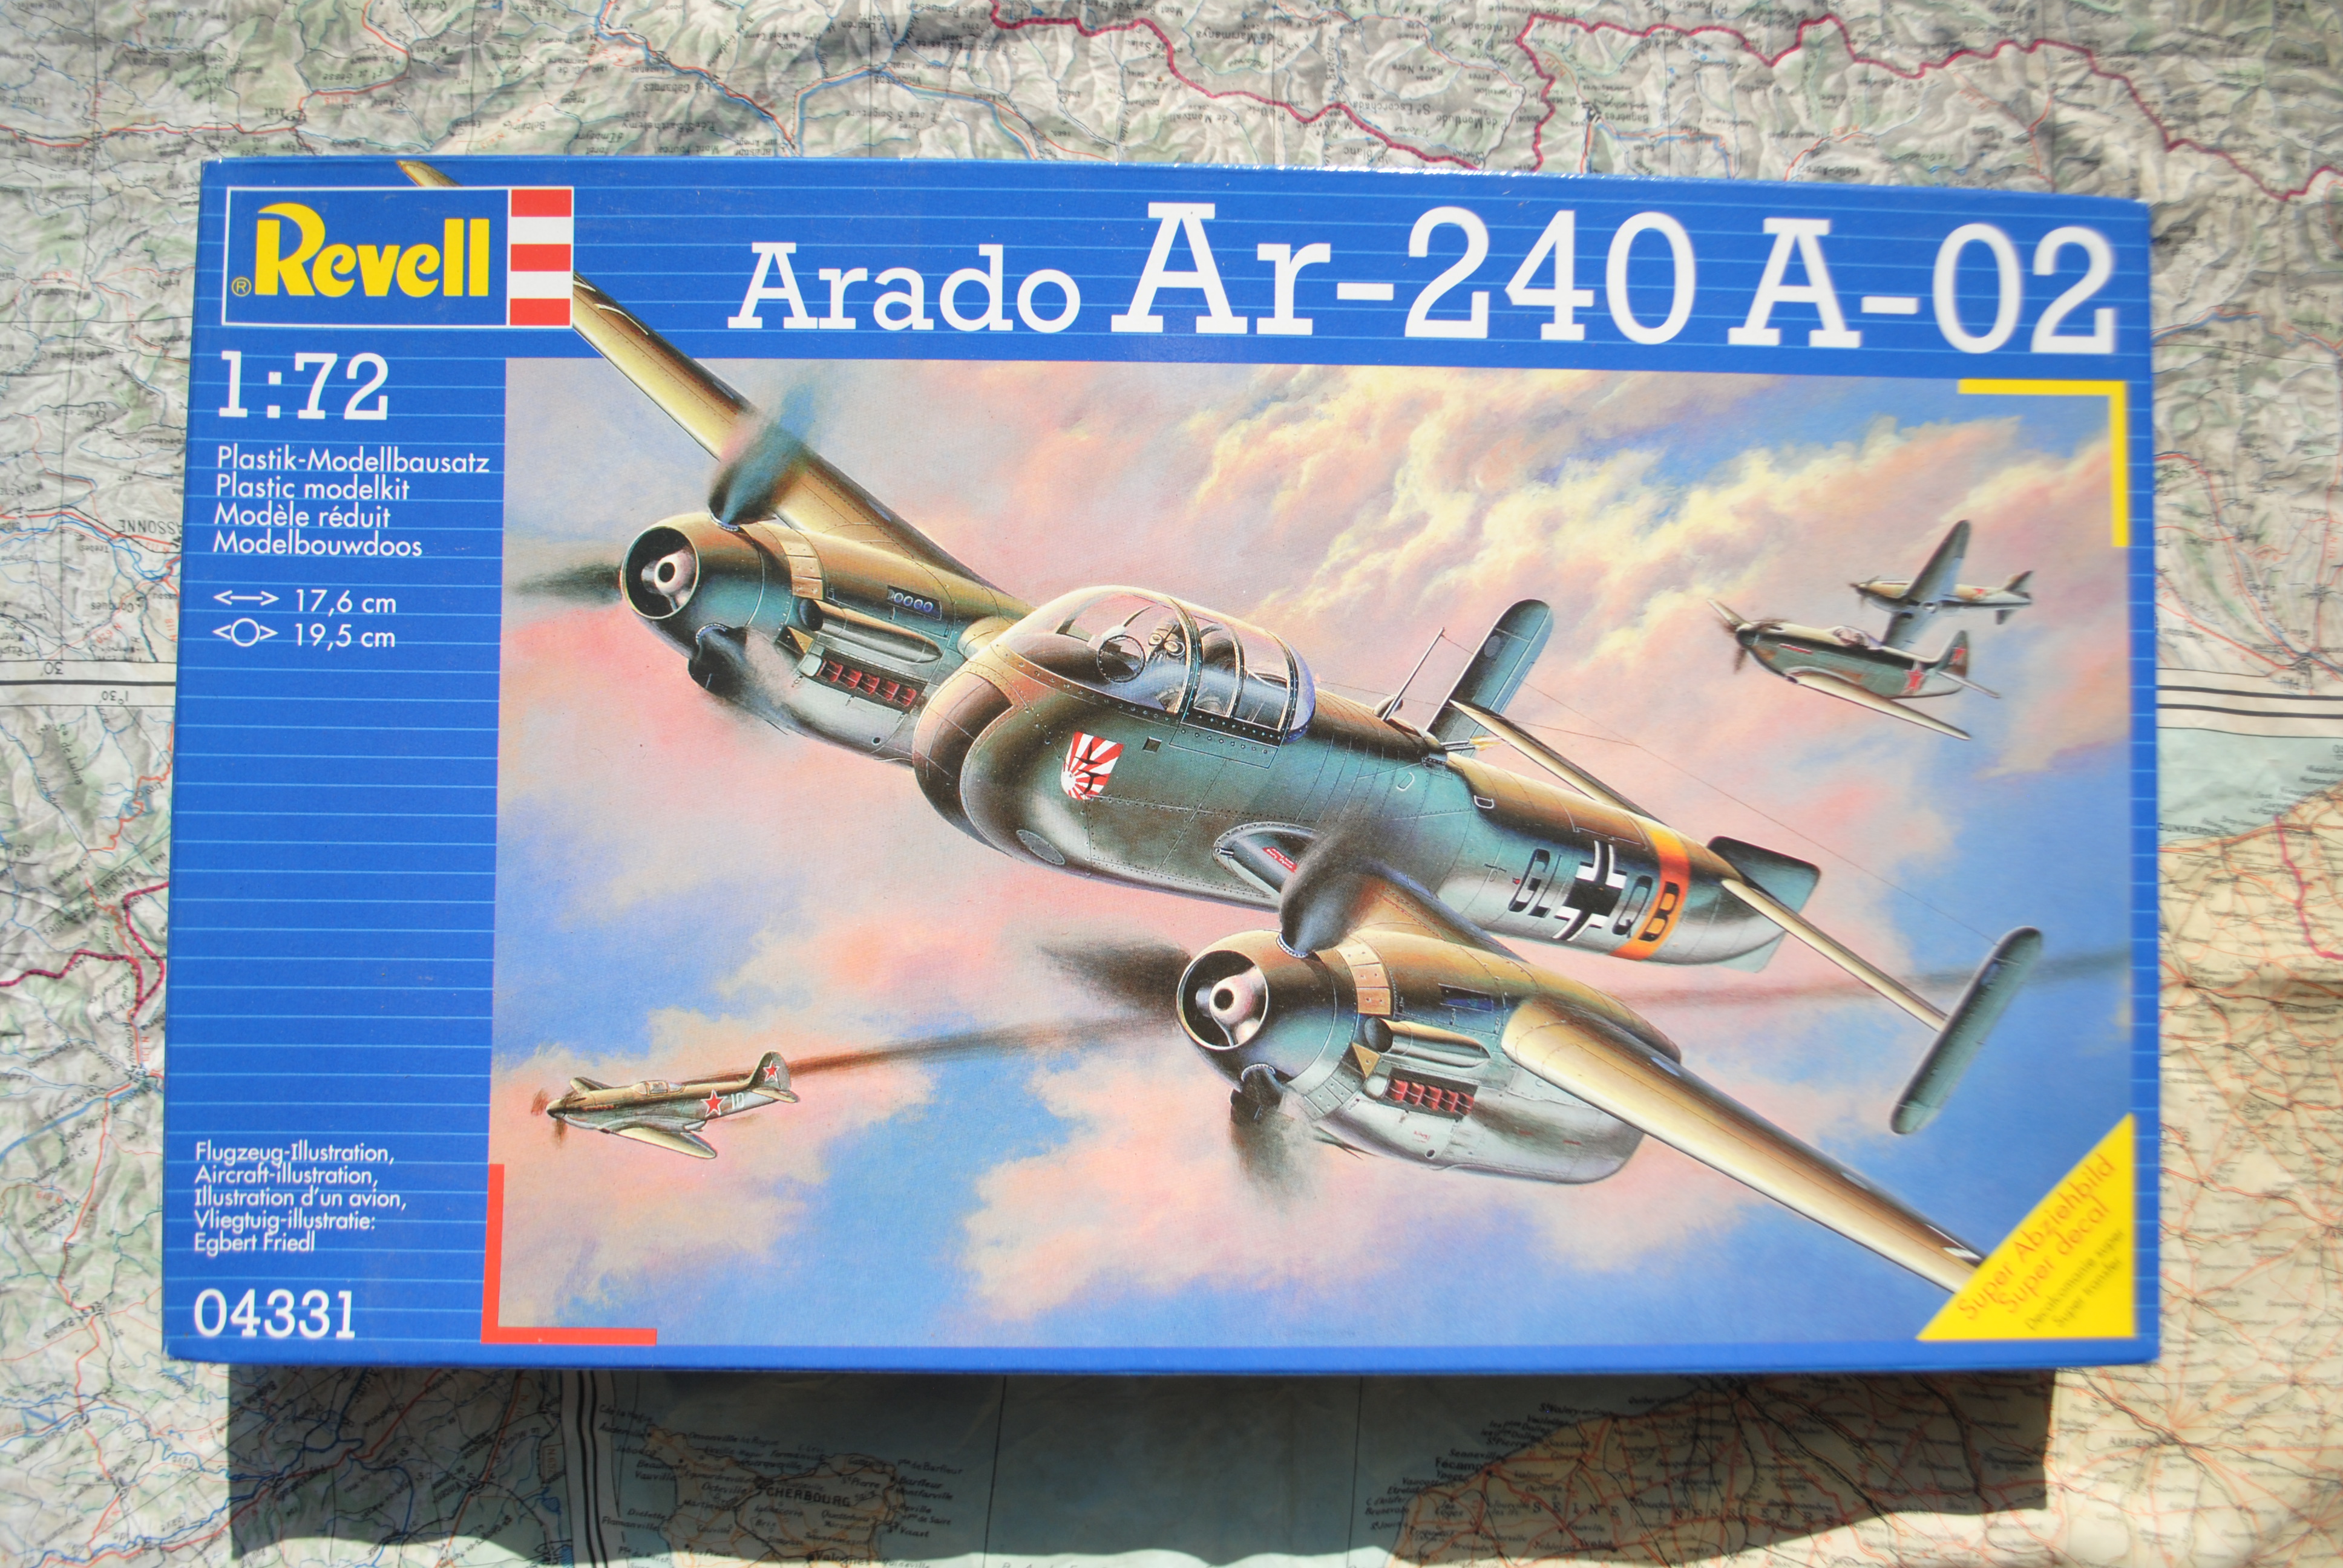 Revell 04331 Arado Ar-240 A-02